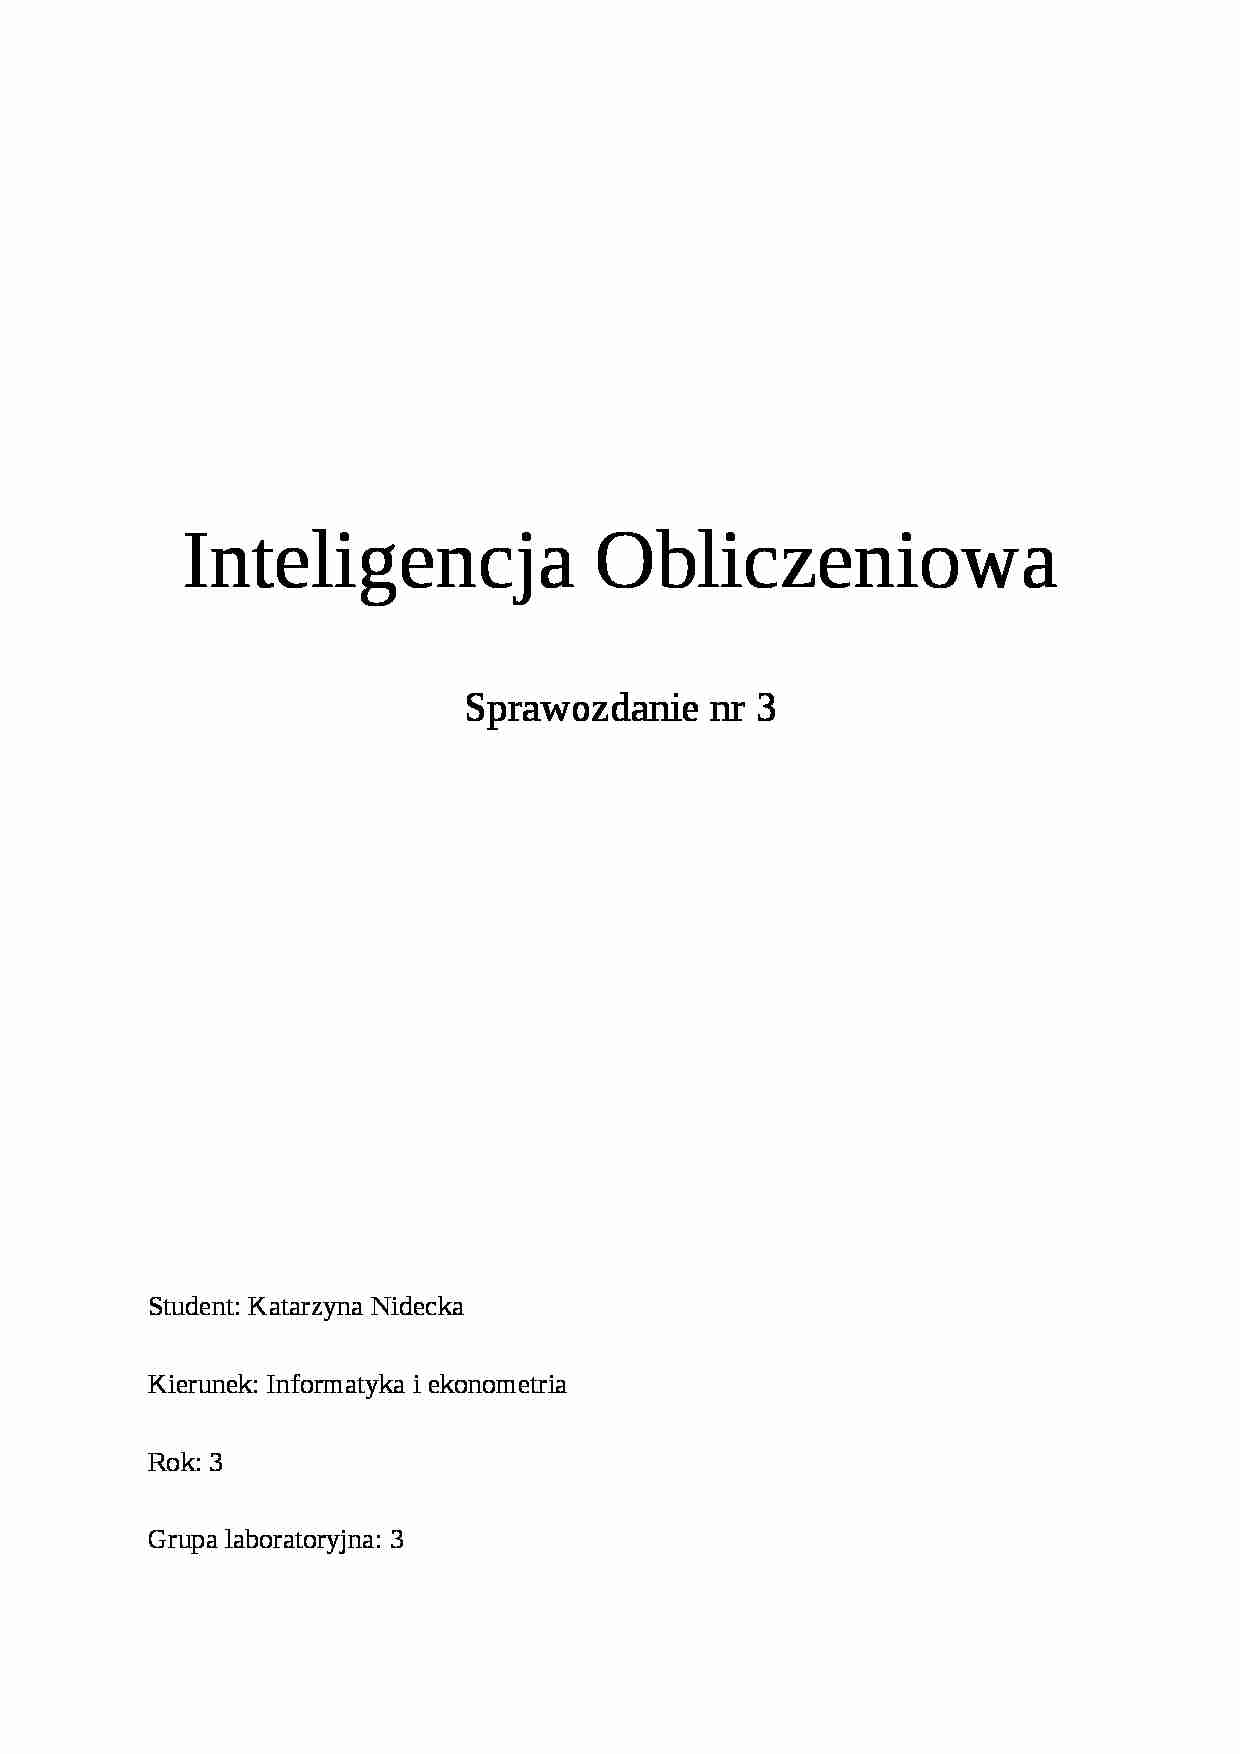 Inteligencja Obliczeniowa-laboratoria - strona 1